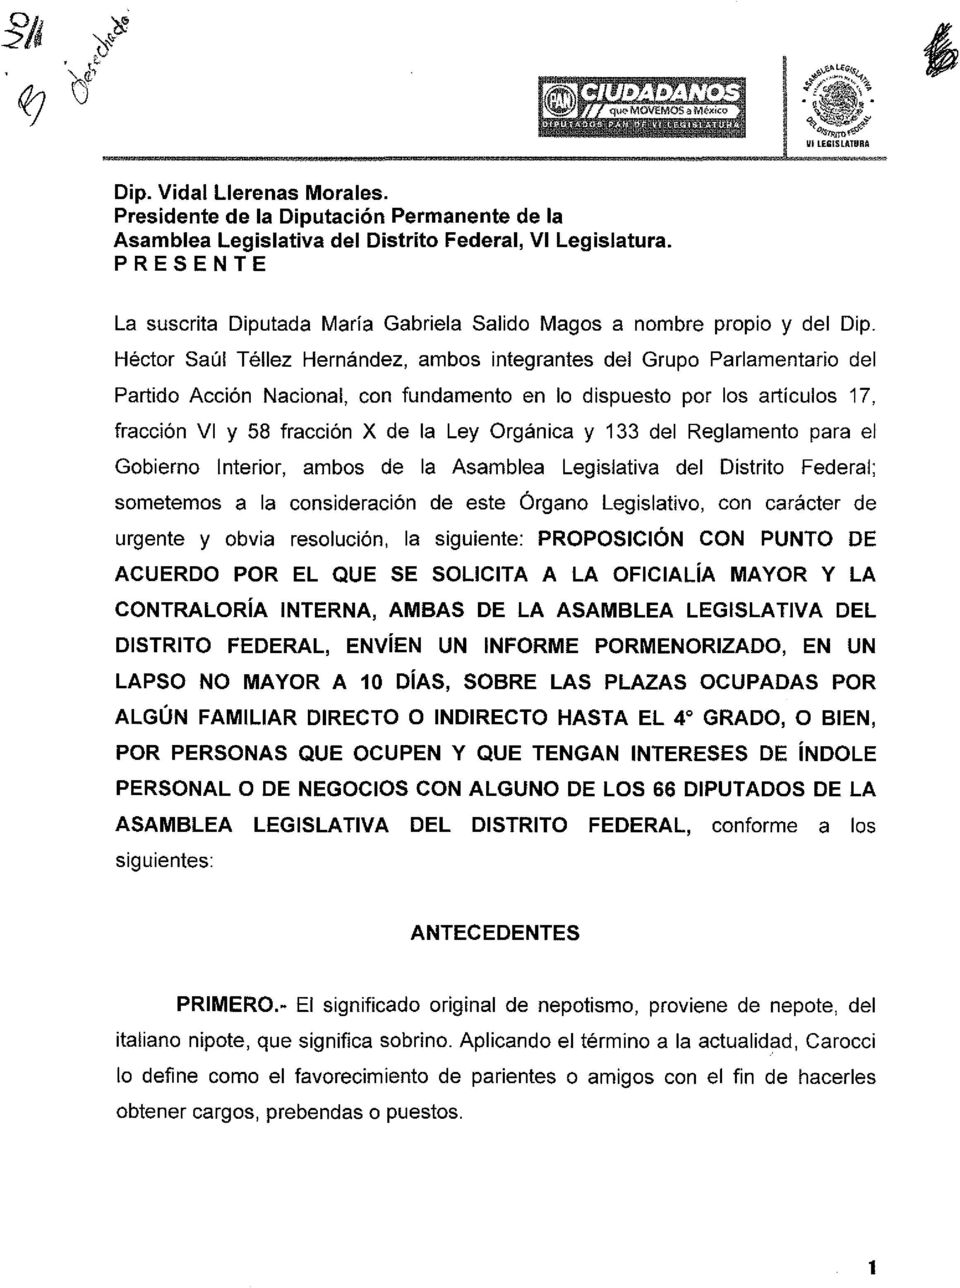 Héctor Saúl Téllez Hernández, ambos integrantes del Grupo Parlamentario del Partido Acción Nacional, con fundamento en lo dispuesto por los artículos 17, fracción VI y 58 fracción X de la Ley